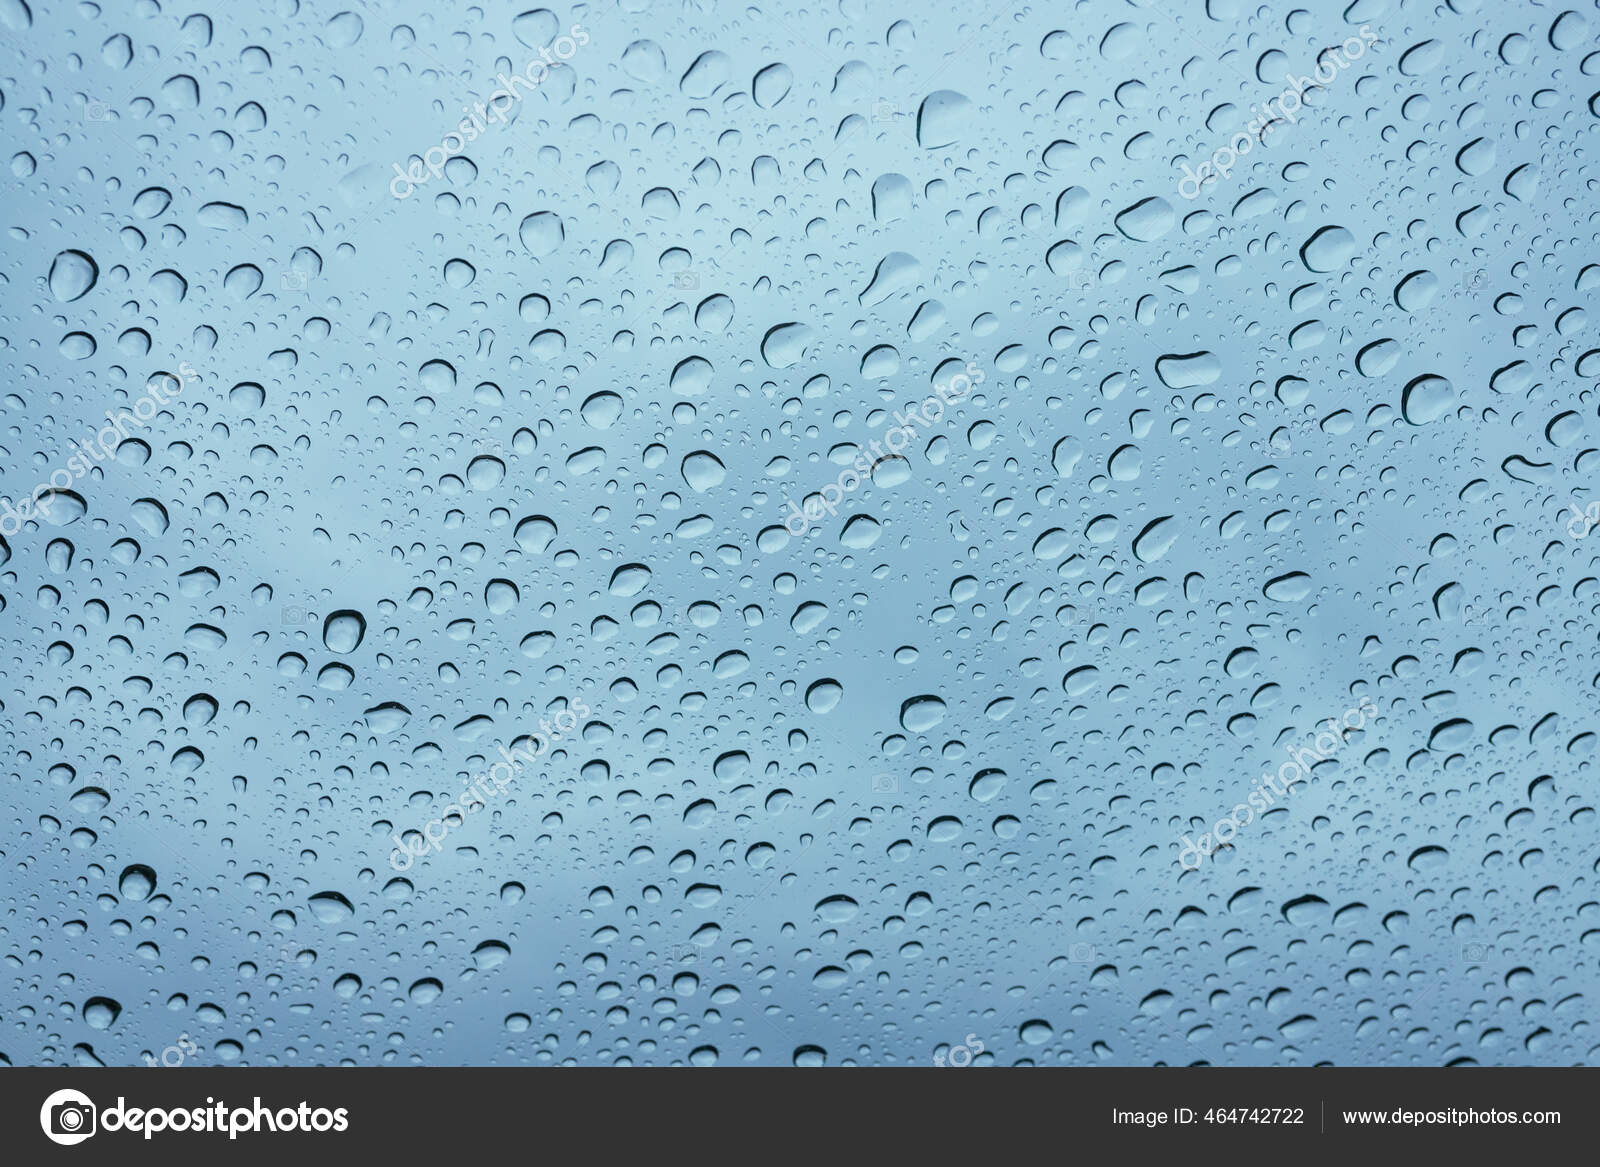 雨落在车窗的表面车窗的背景是灰色的挡风玻璃上的天然雨滴图案水滴壁纸 图库照片 C Tanchiic